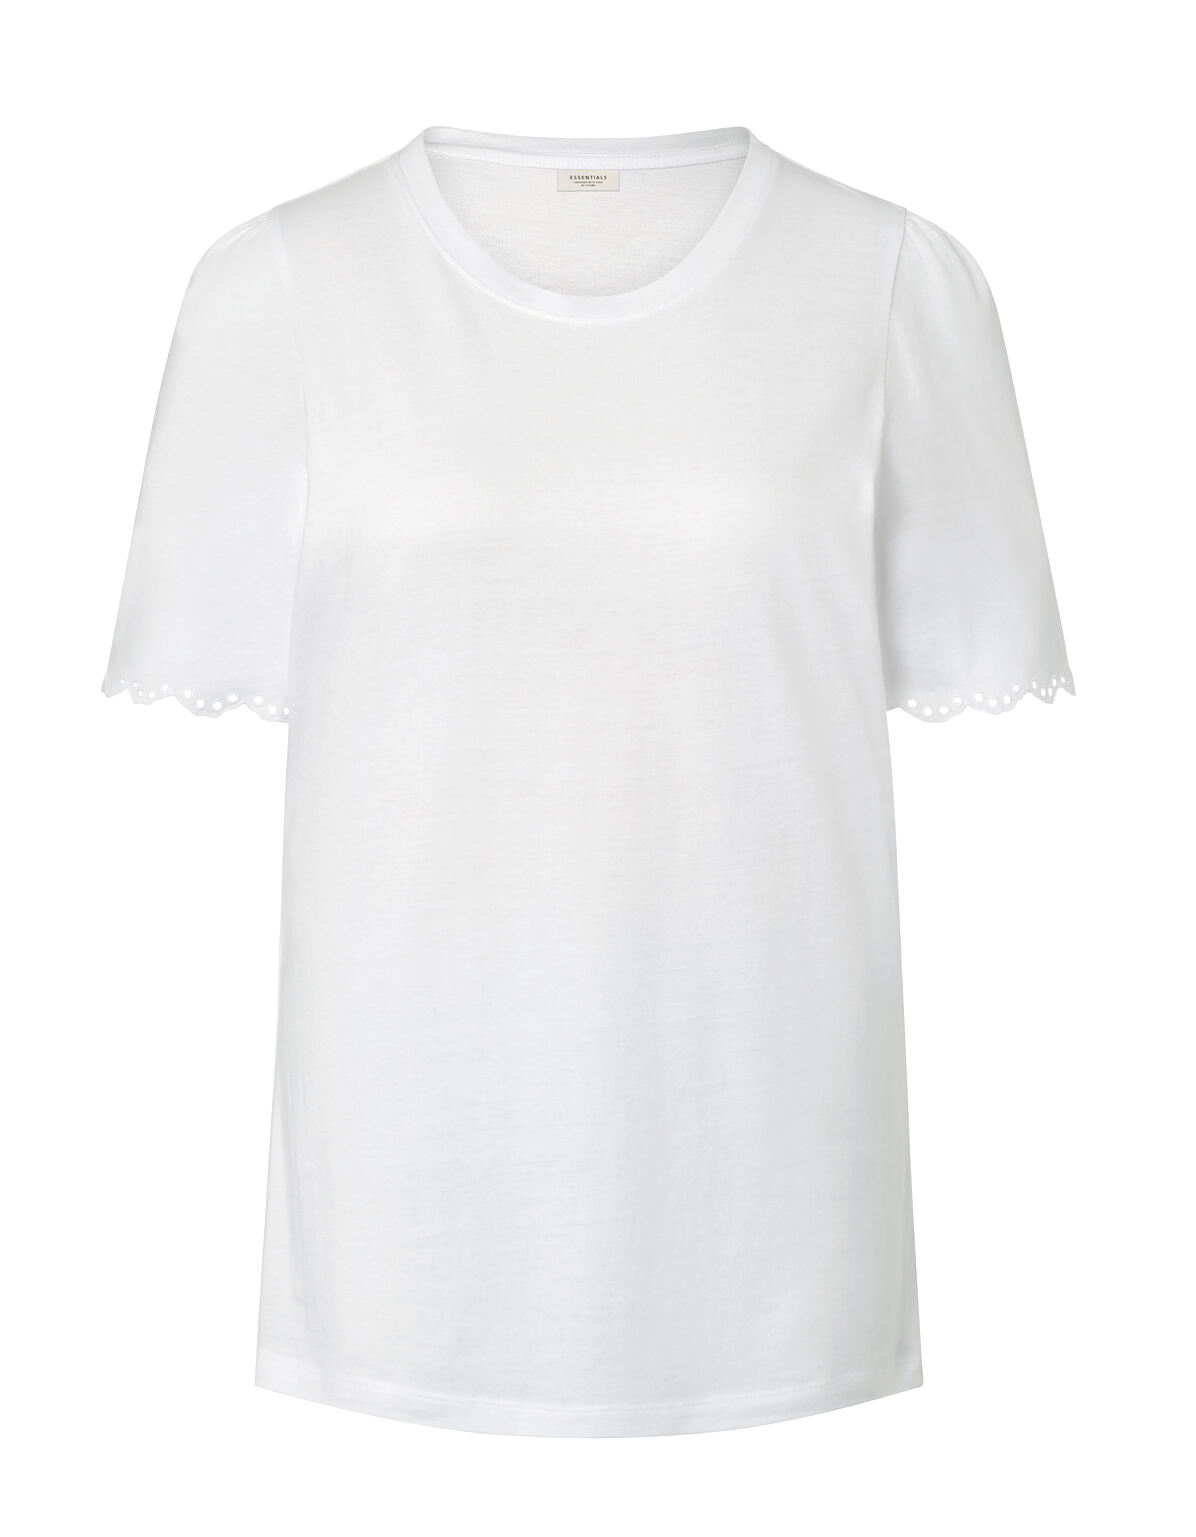 TCHIBO_129909 Shirt mit Raffung, Weiß FS 1 19.23